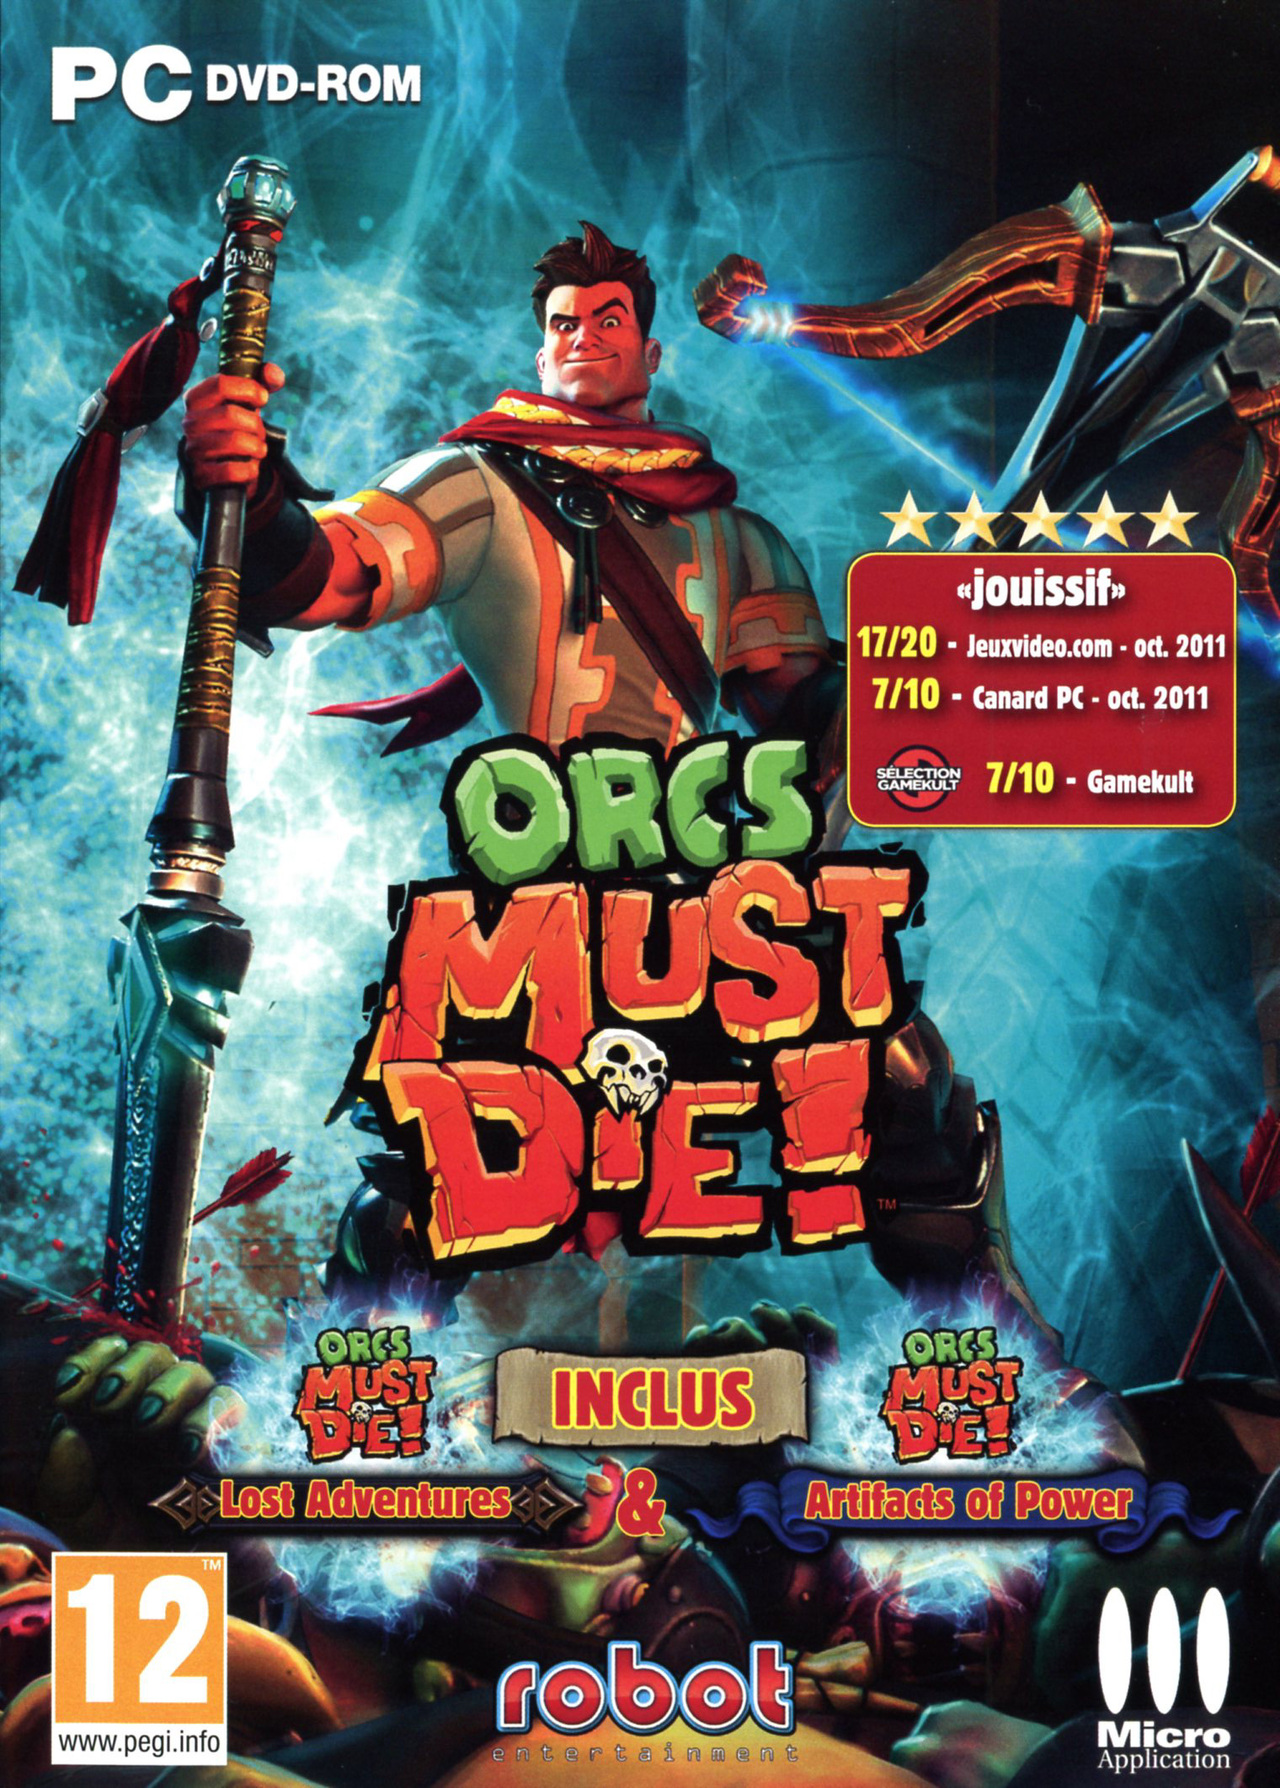 jaquette du jeu vidéo Orcs Must Die!